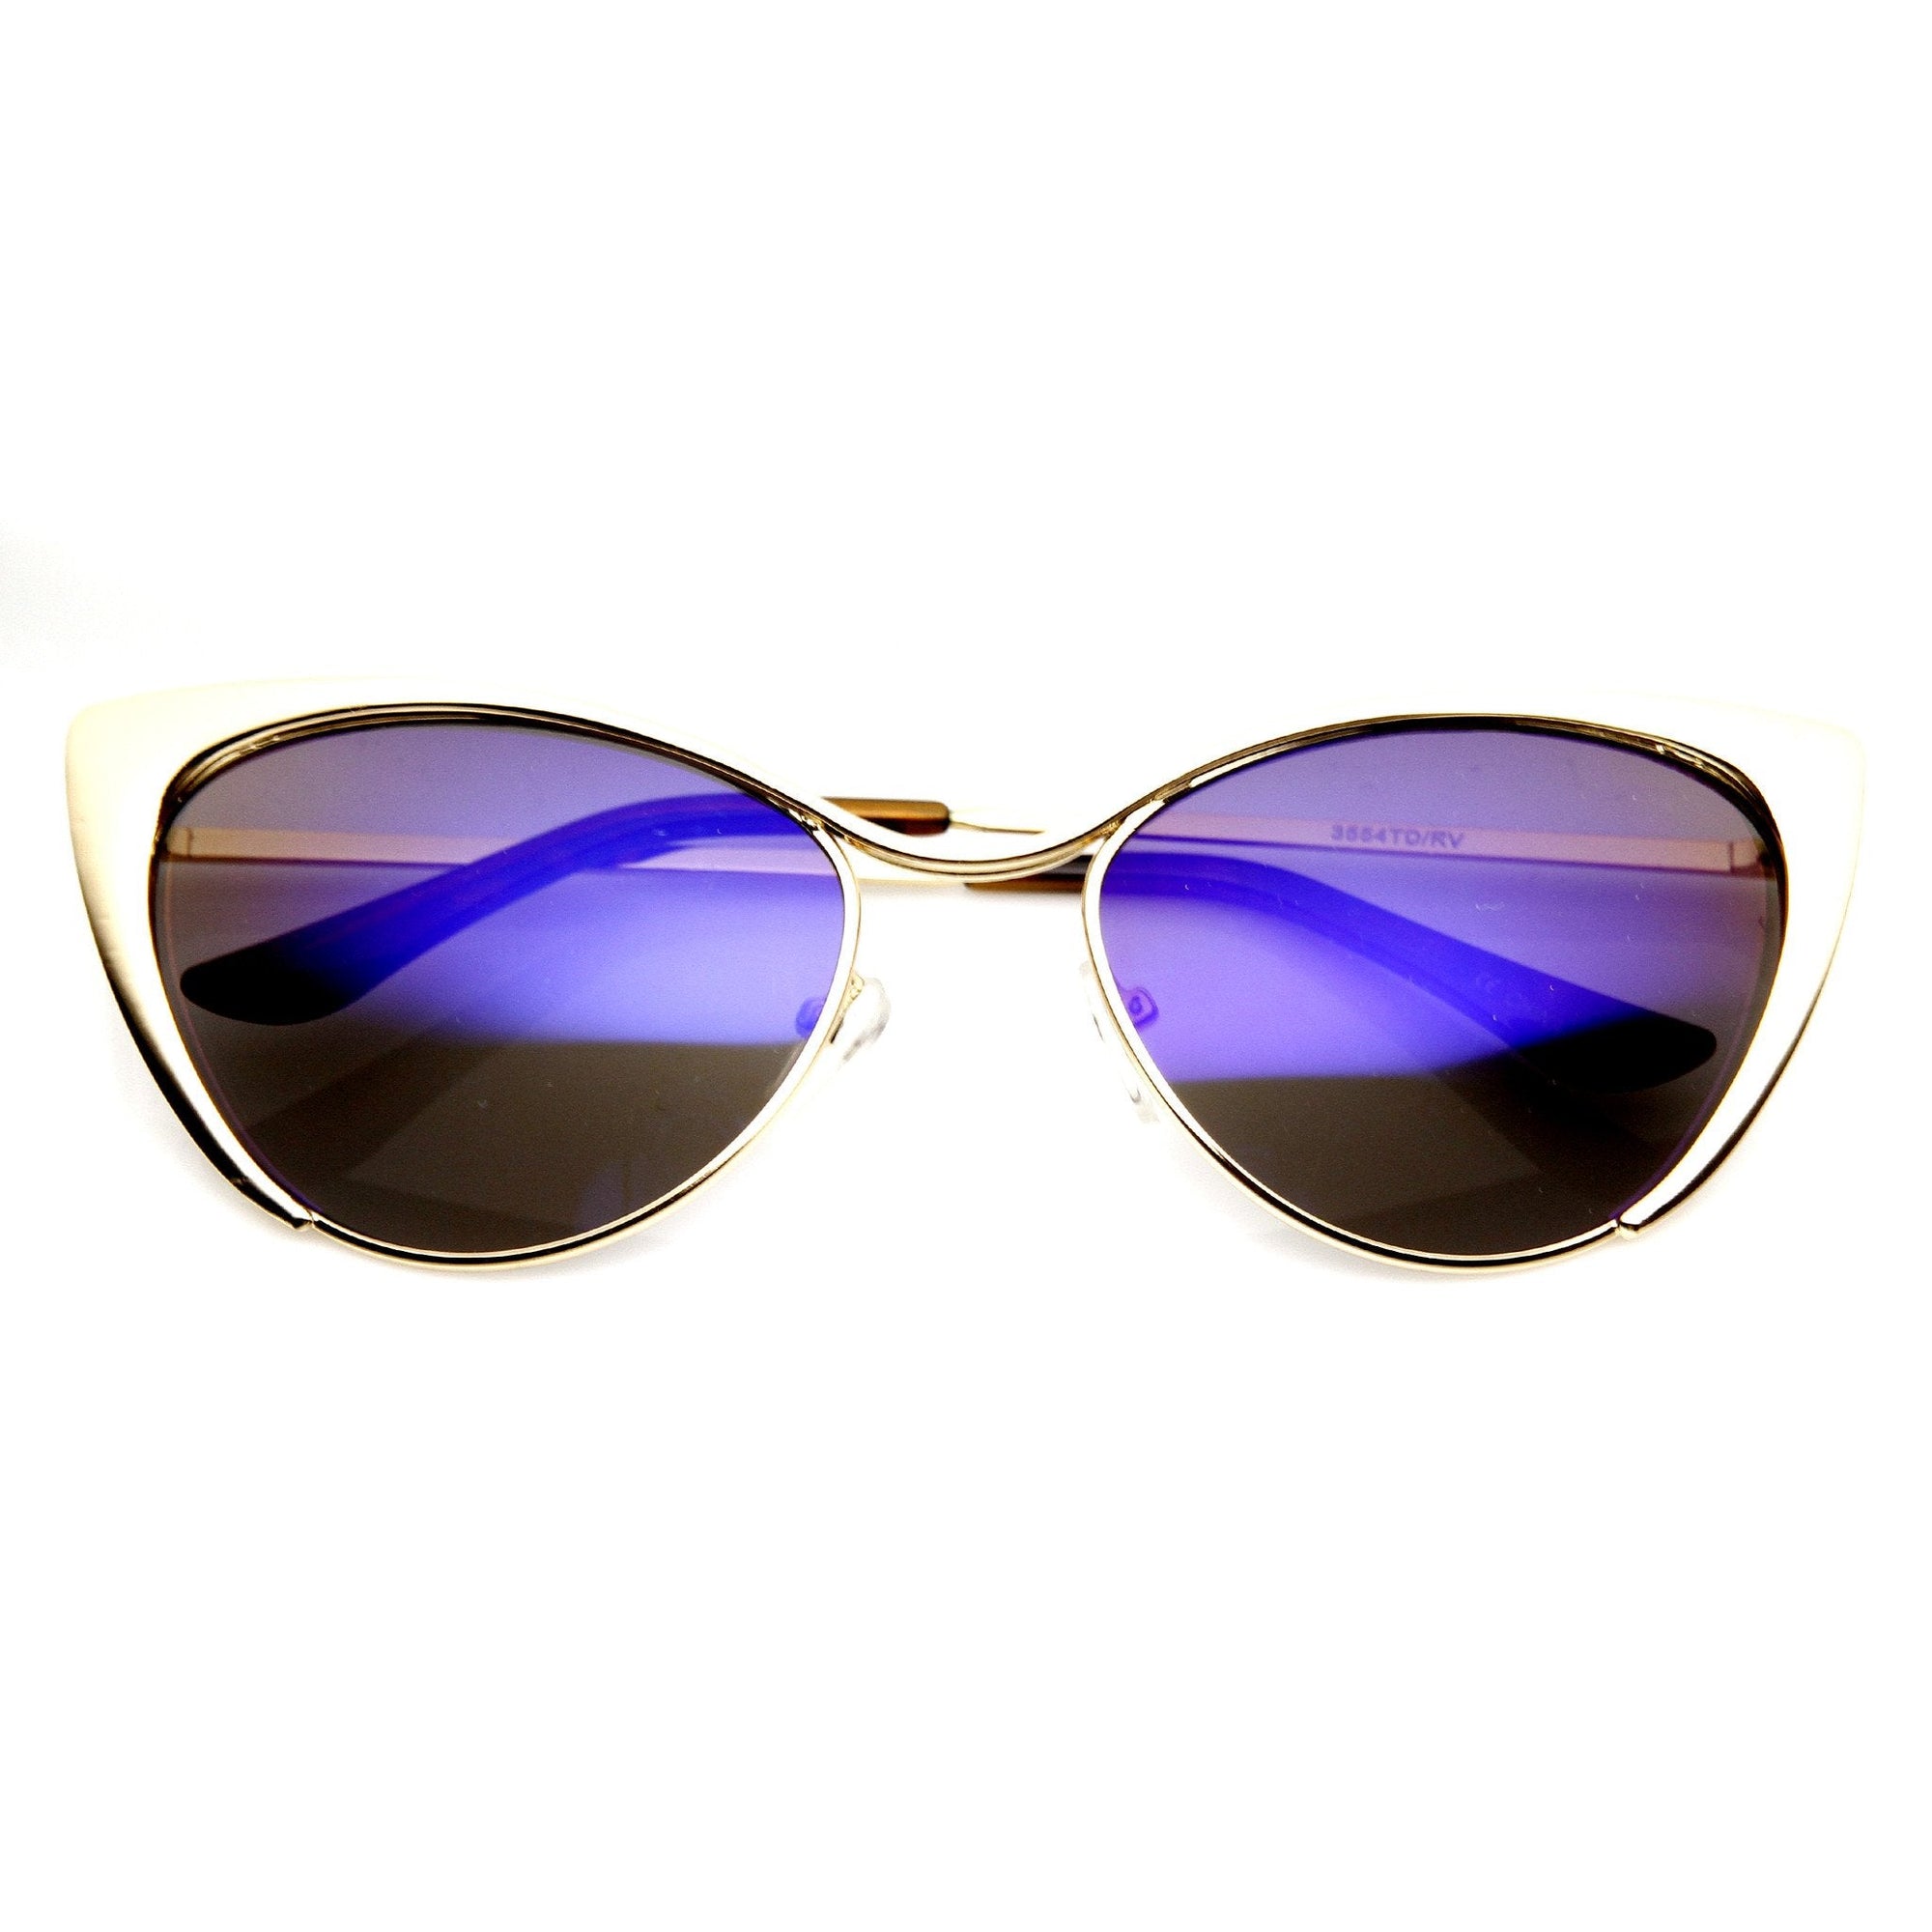 Gafas de sol con lentes de color flash y ojo de gato de metal para mujer 9437